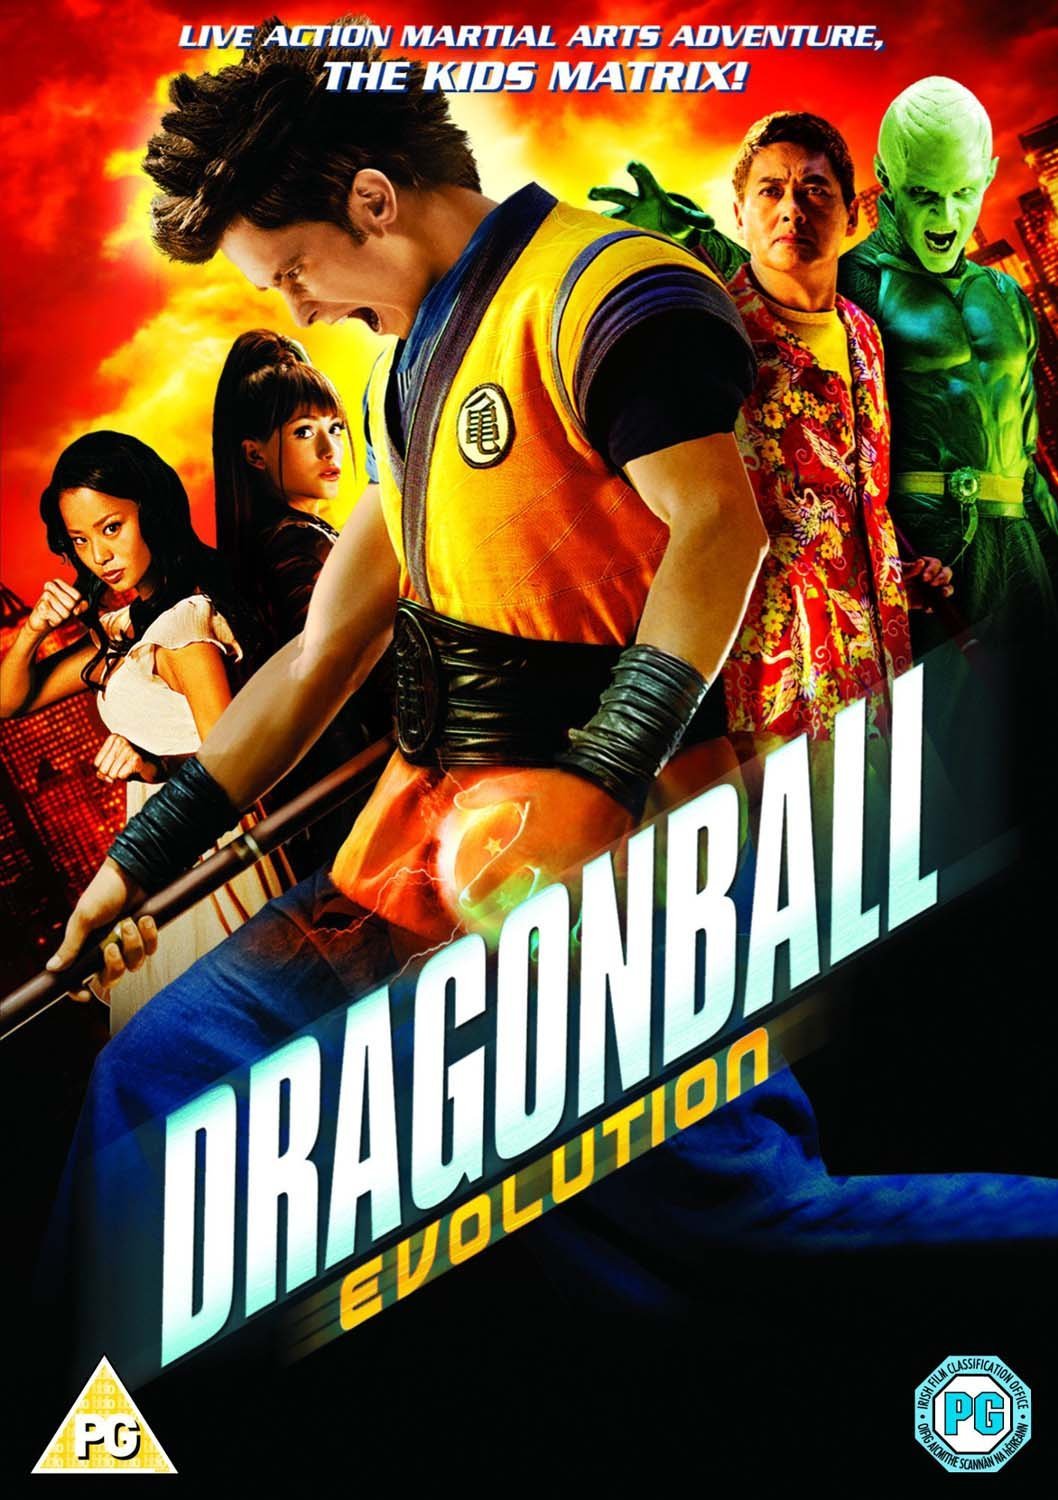 Dragonball Evolution tem um jogo tão ruim quanto o filme. Imagina